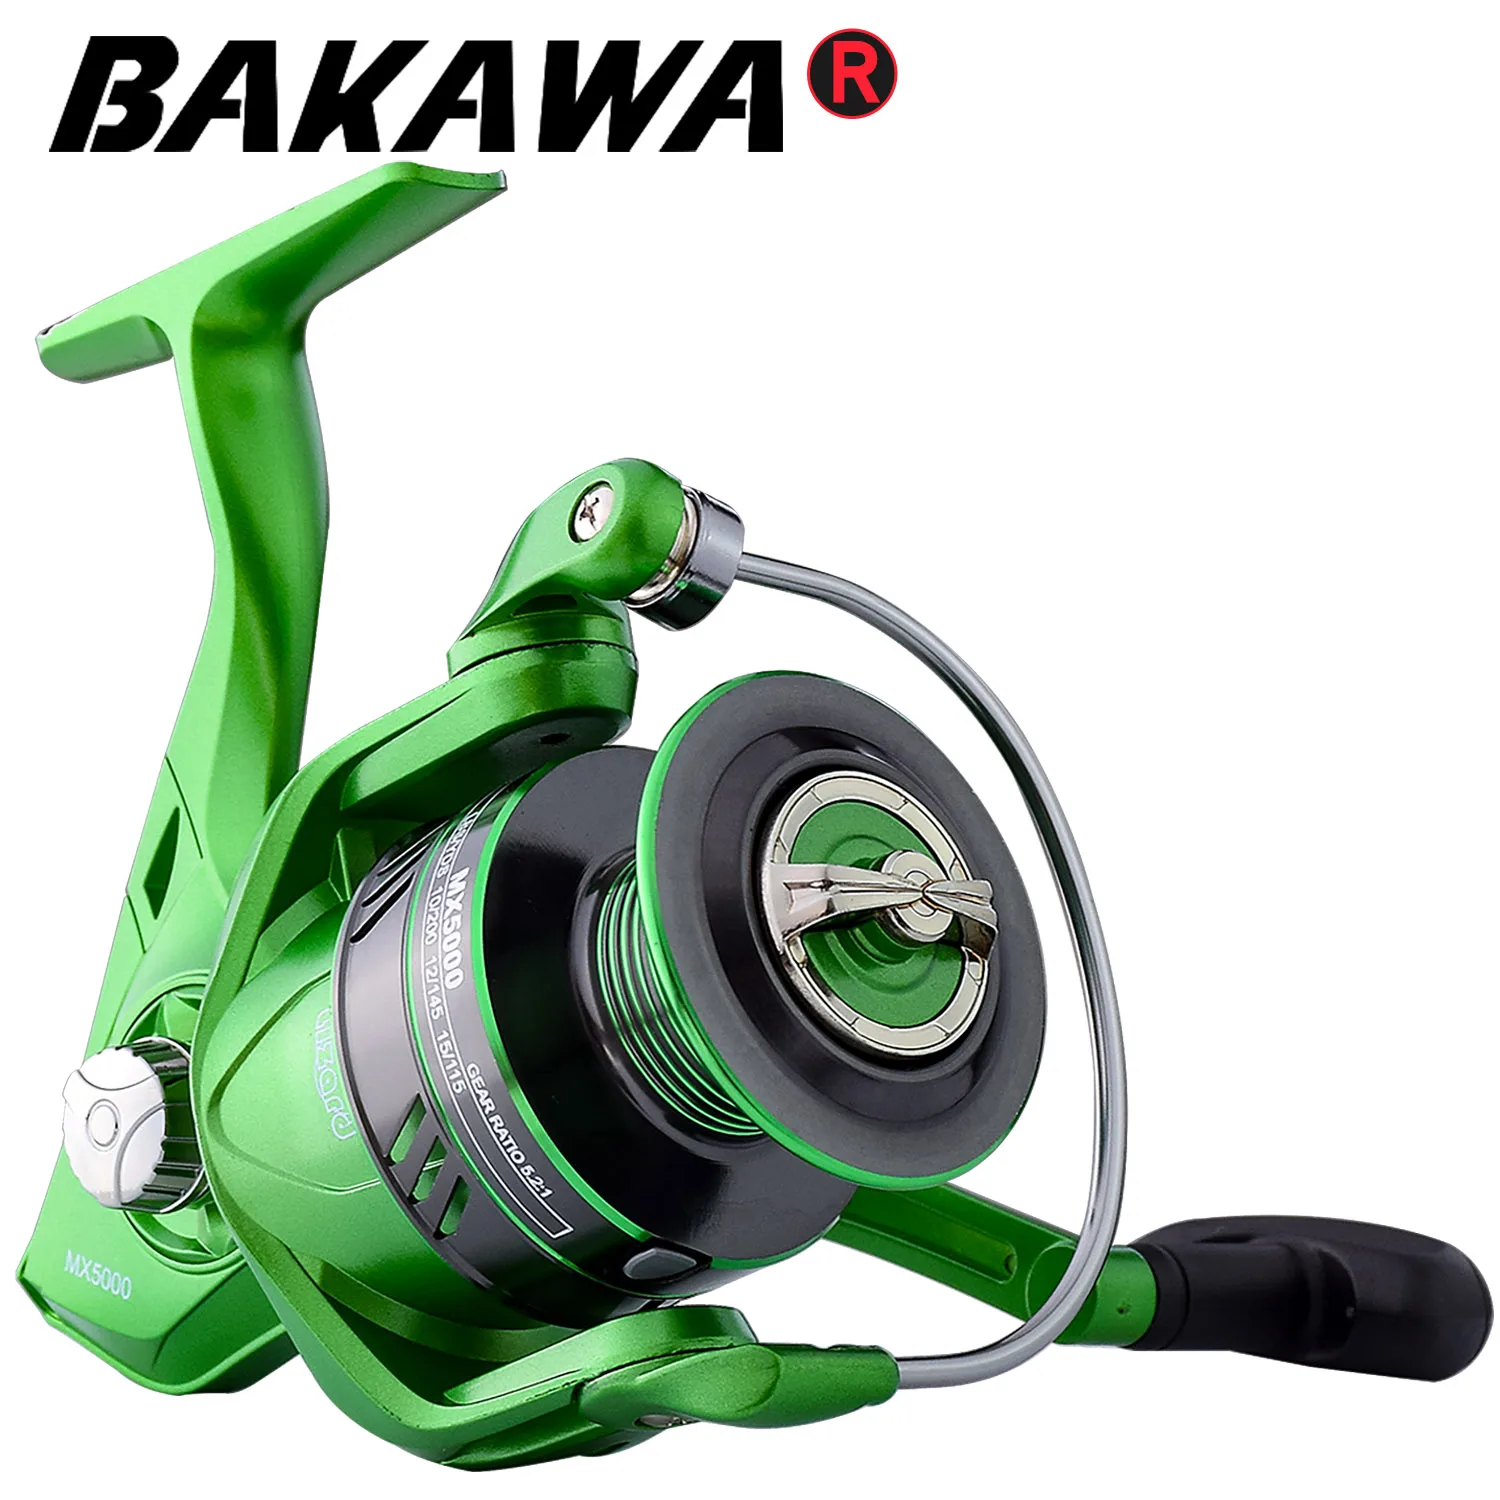 

BAKAWA Fishing Spinning Reel Metal Spool 5.2:1 High Speed 8-12kg Max Drag 11BB Carp Wheel Saltwater Sea Line Tackle Pesca